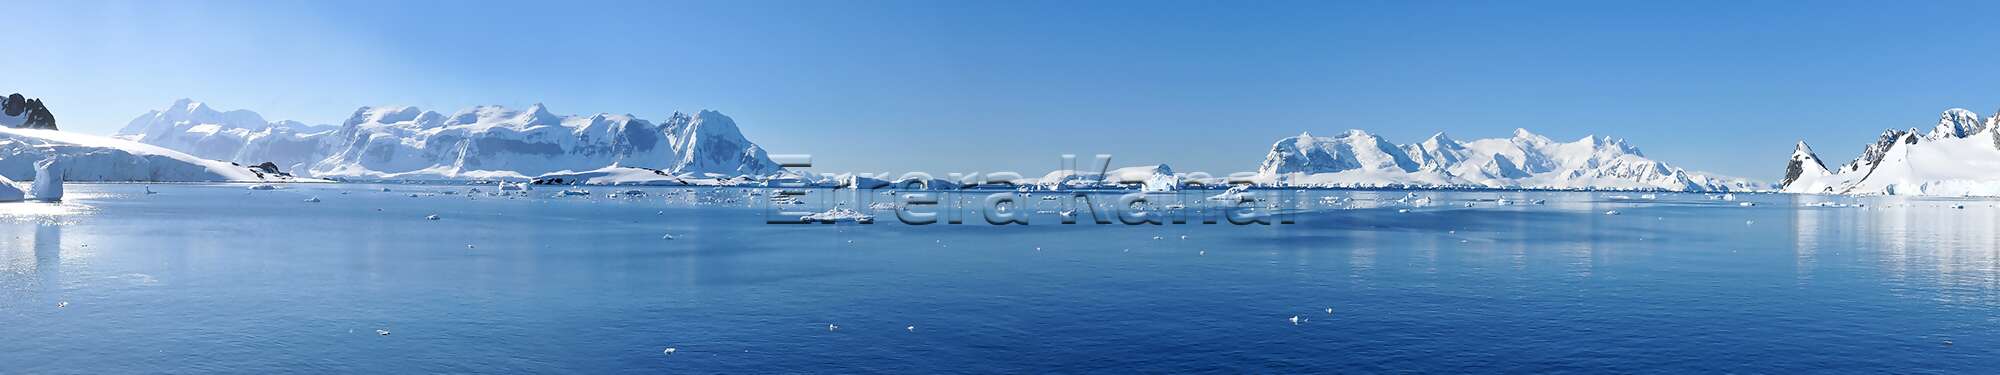 Ein Panorama des Errera-Kanals - auf der linken Seite die Insel Anvers und auf der rechten Seite die Halbinsel Arctowski in der Region Antarktis